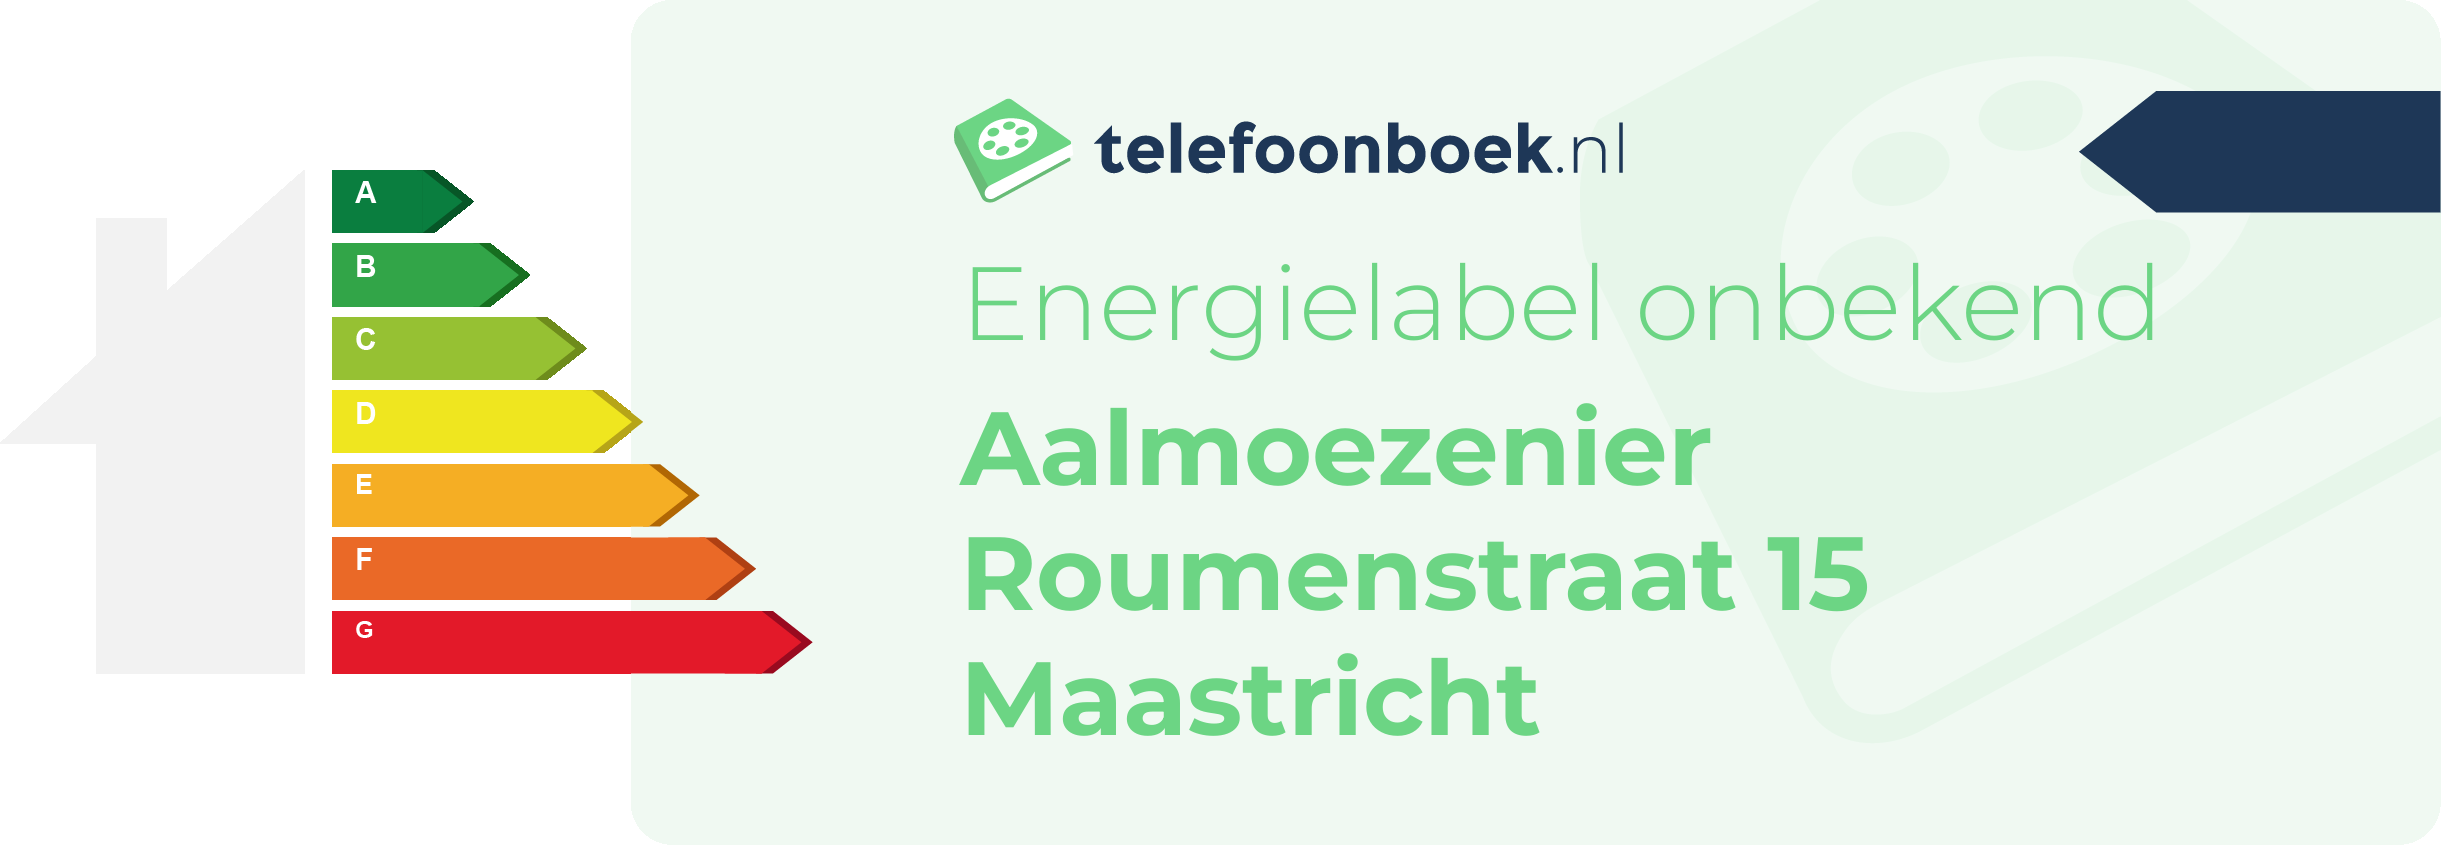 Energielabel Aalmoezenier Roumenstraat 15 Maastricht